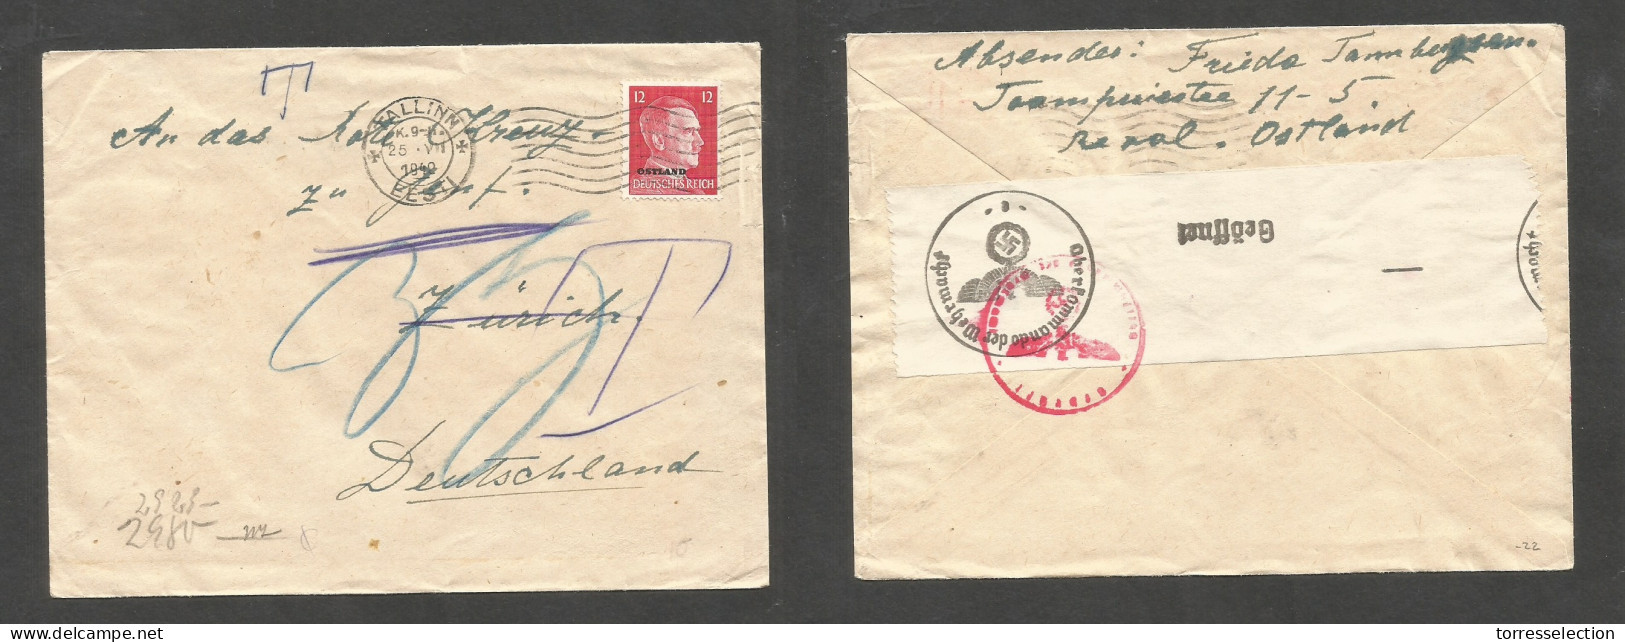 ESTONIA. 1940 (25 July) Nazi Occup. Tallinn - Switzerland, Zurich. Comercial Single Fkd Hitler Ovptd 12p Envelope Rollin - Estonie